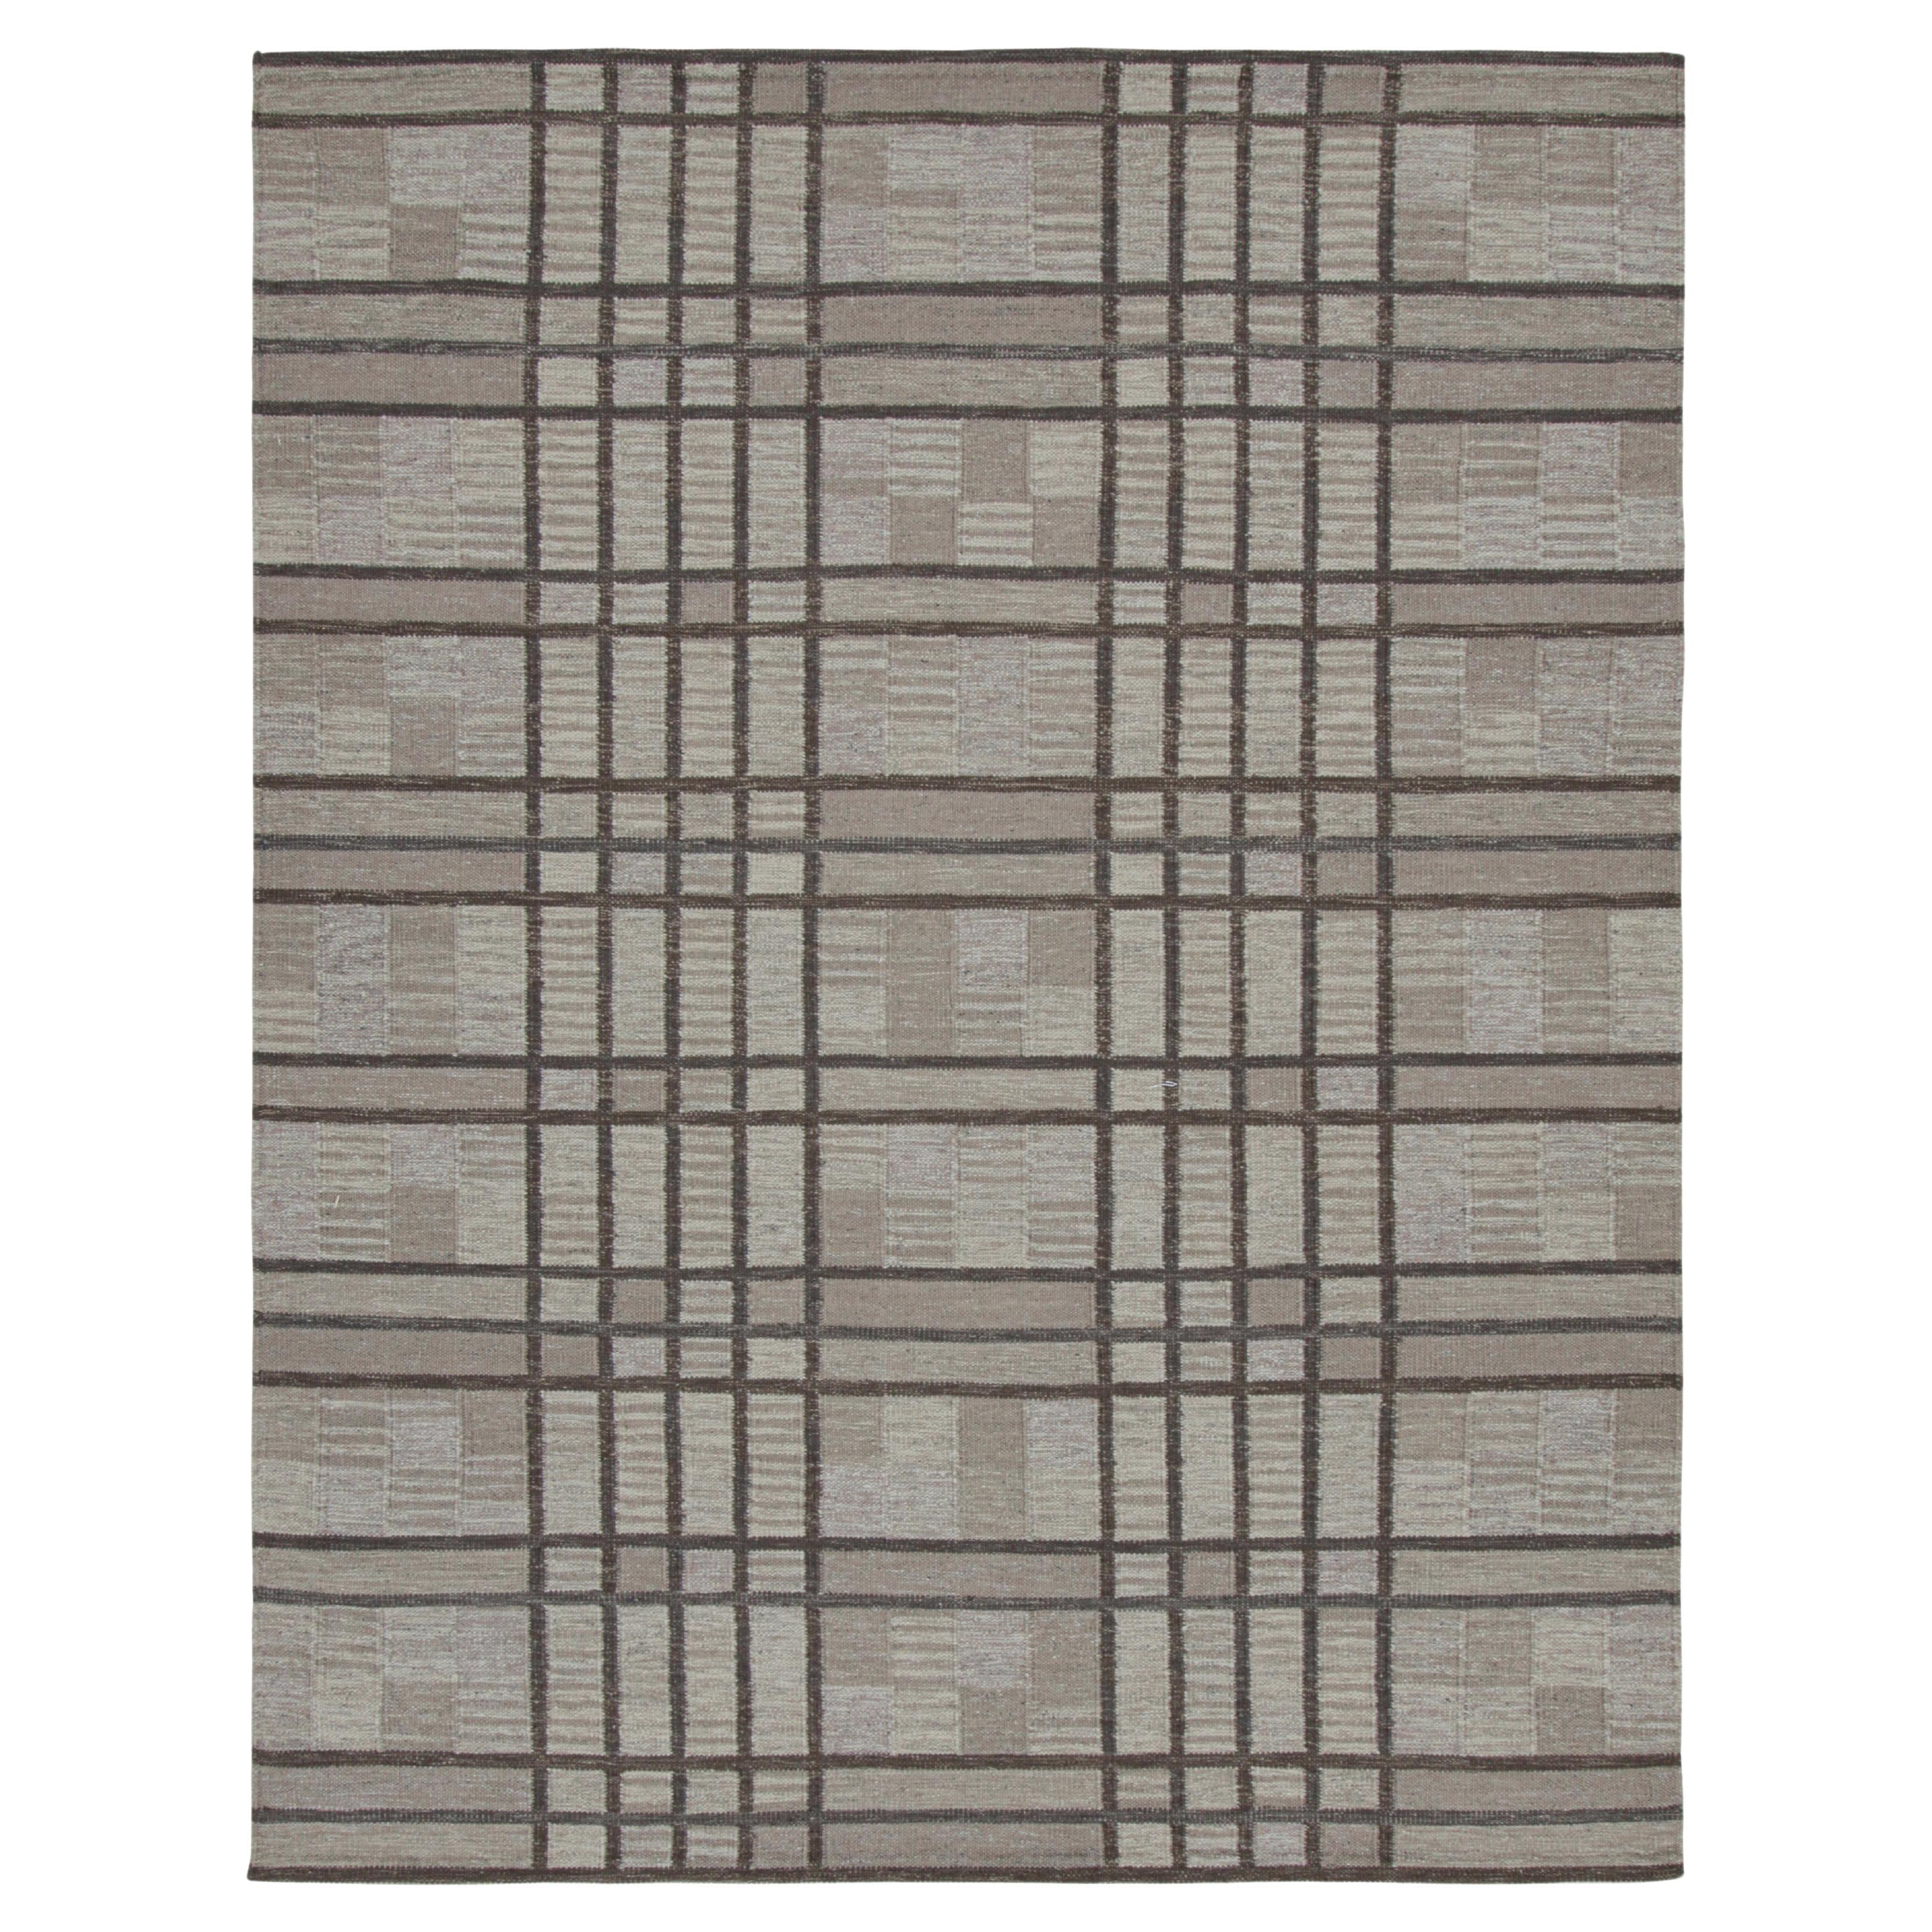 Rug & Kilim's Teppich im skandinavischen Stil mit geometrischen Mustern in Brauntönen